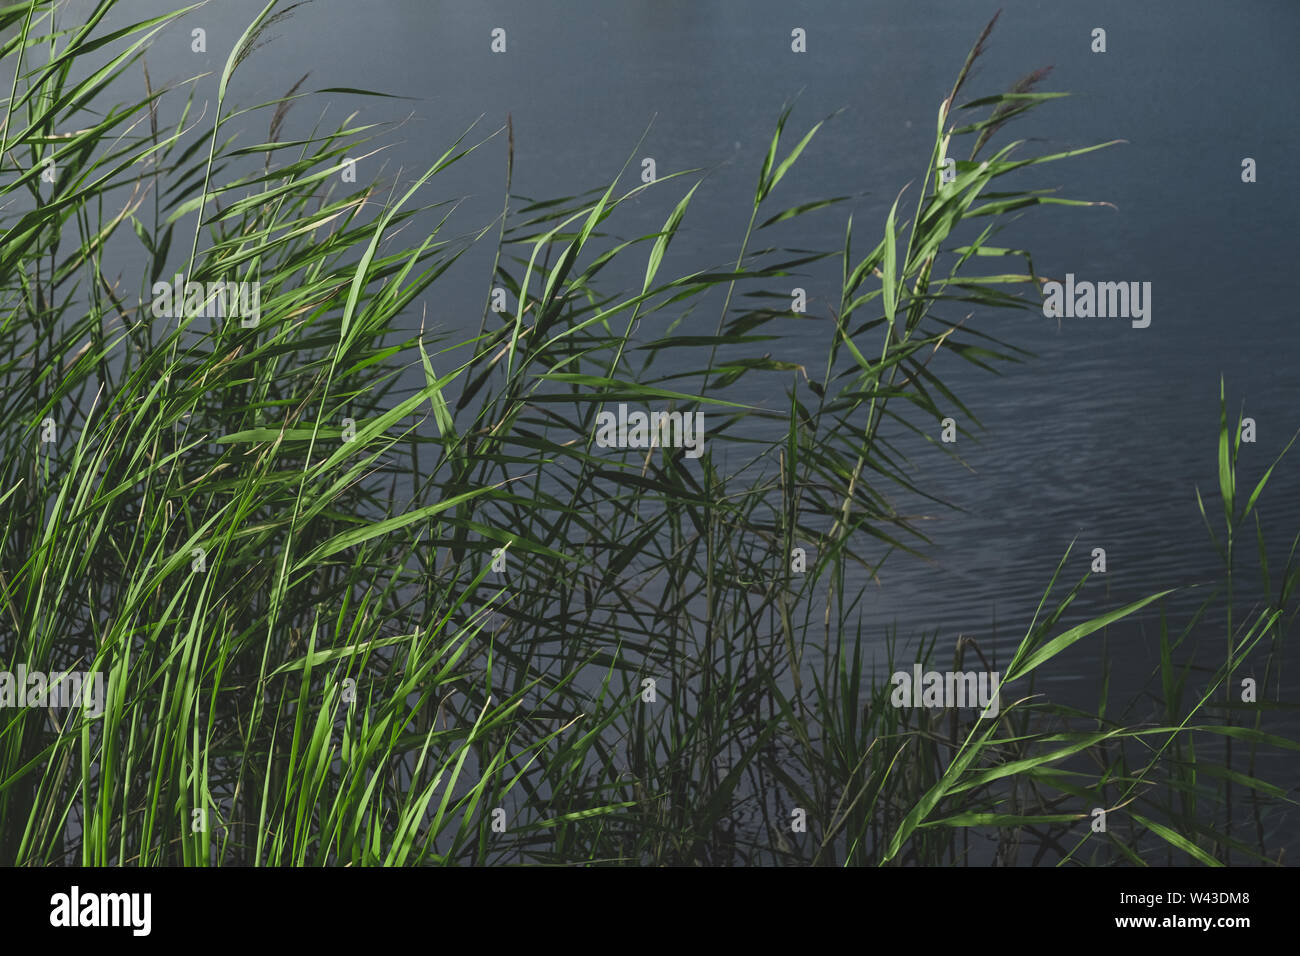 Balrush les plantes et un étang en vert pâle et bleu le lcol leady couleurs. Détails de nature apaisante : sunlit Lake de la canne à sucre et l'eau sombre. Banque D'Images